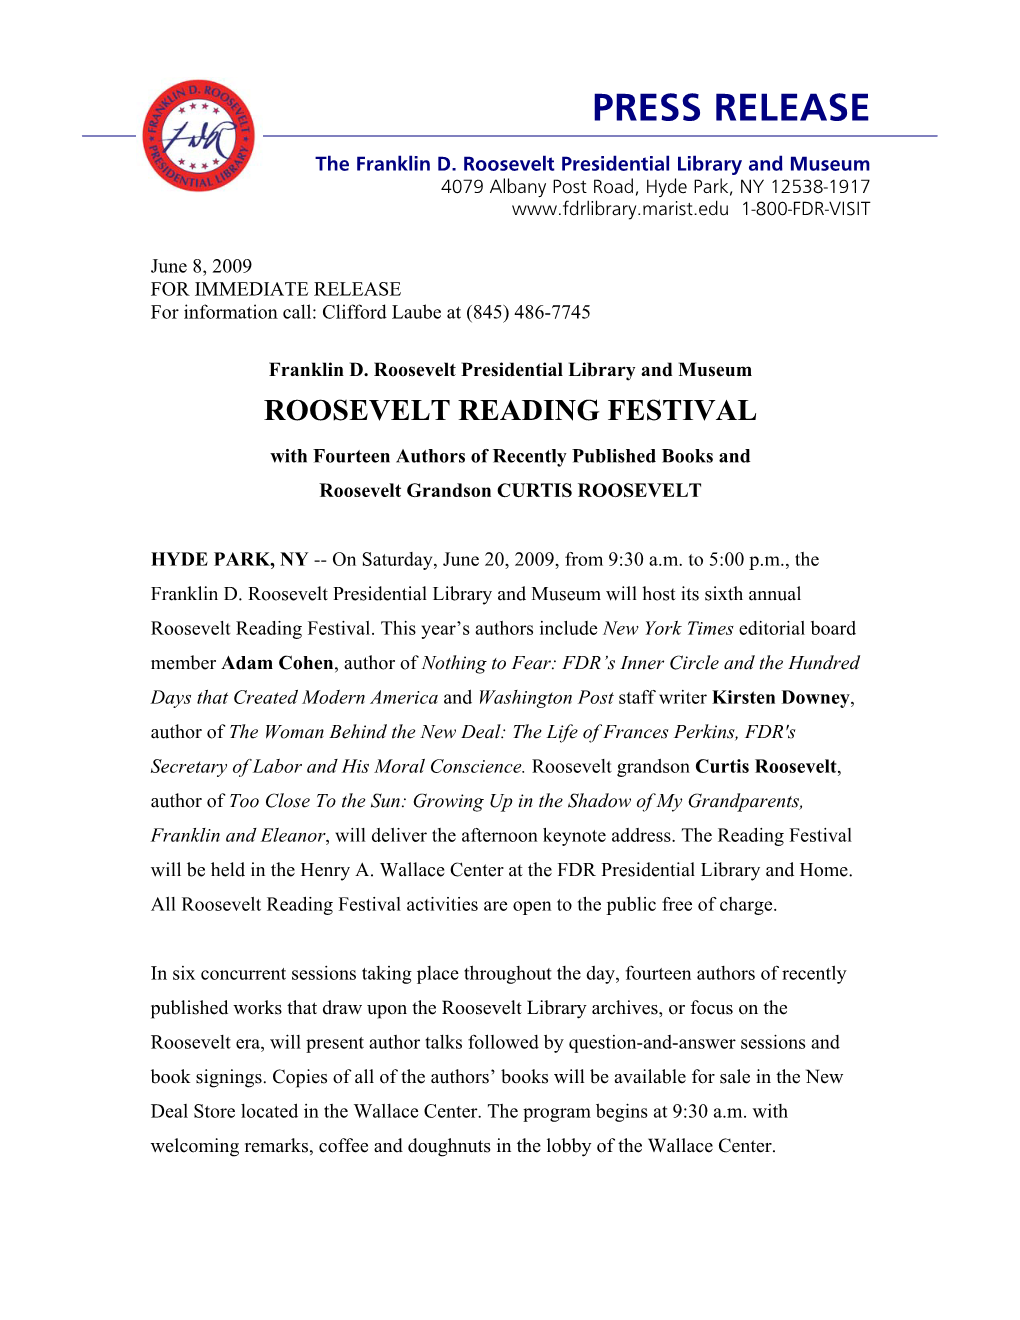 Roosevelt Reading Festival